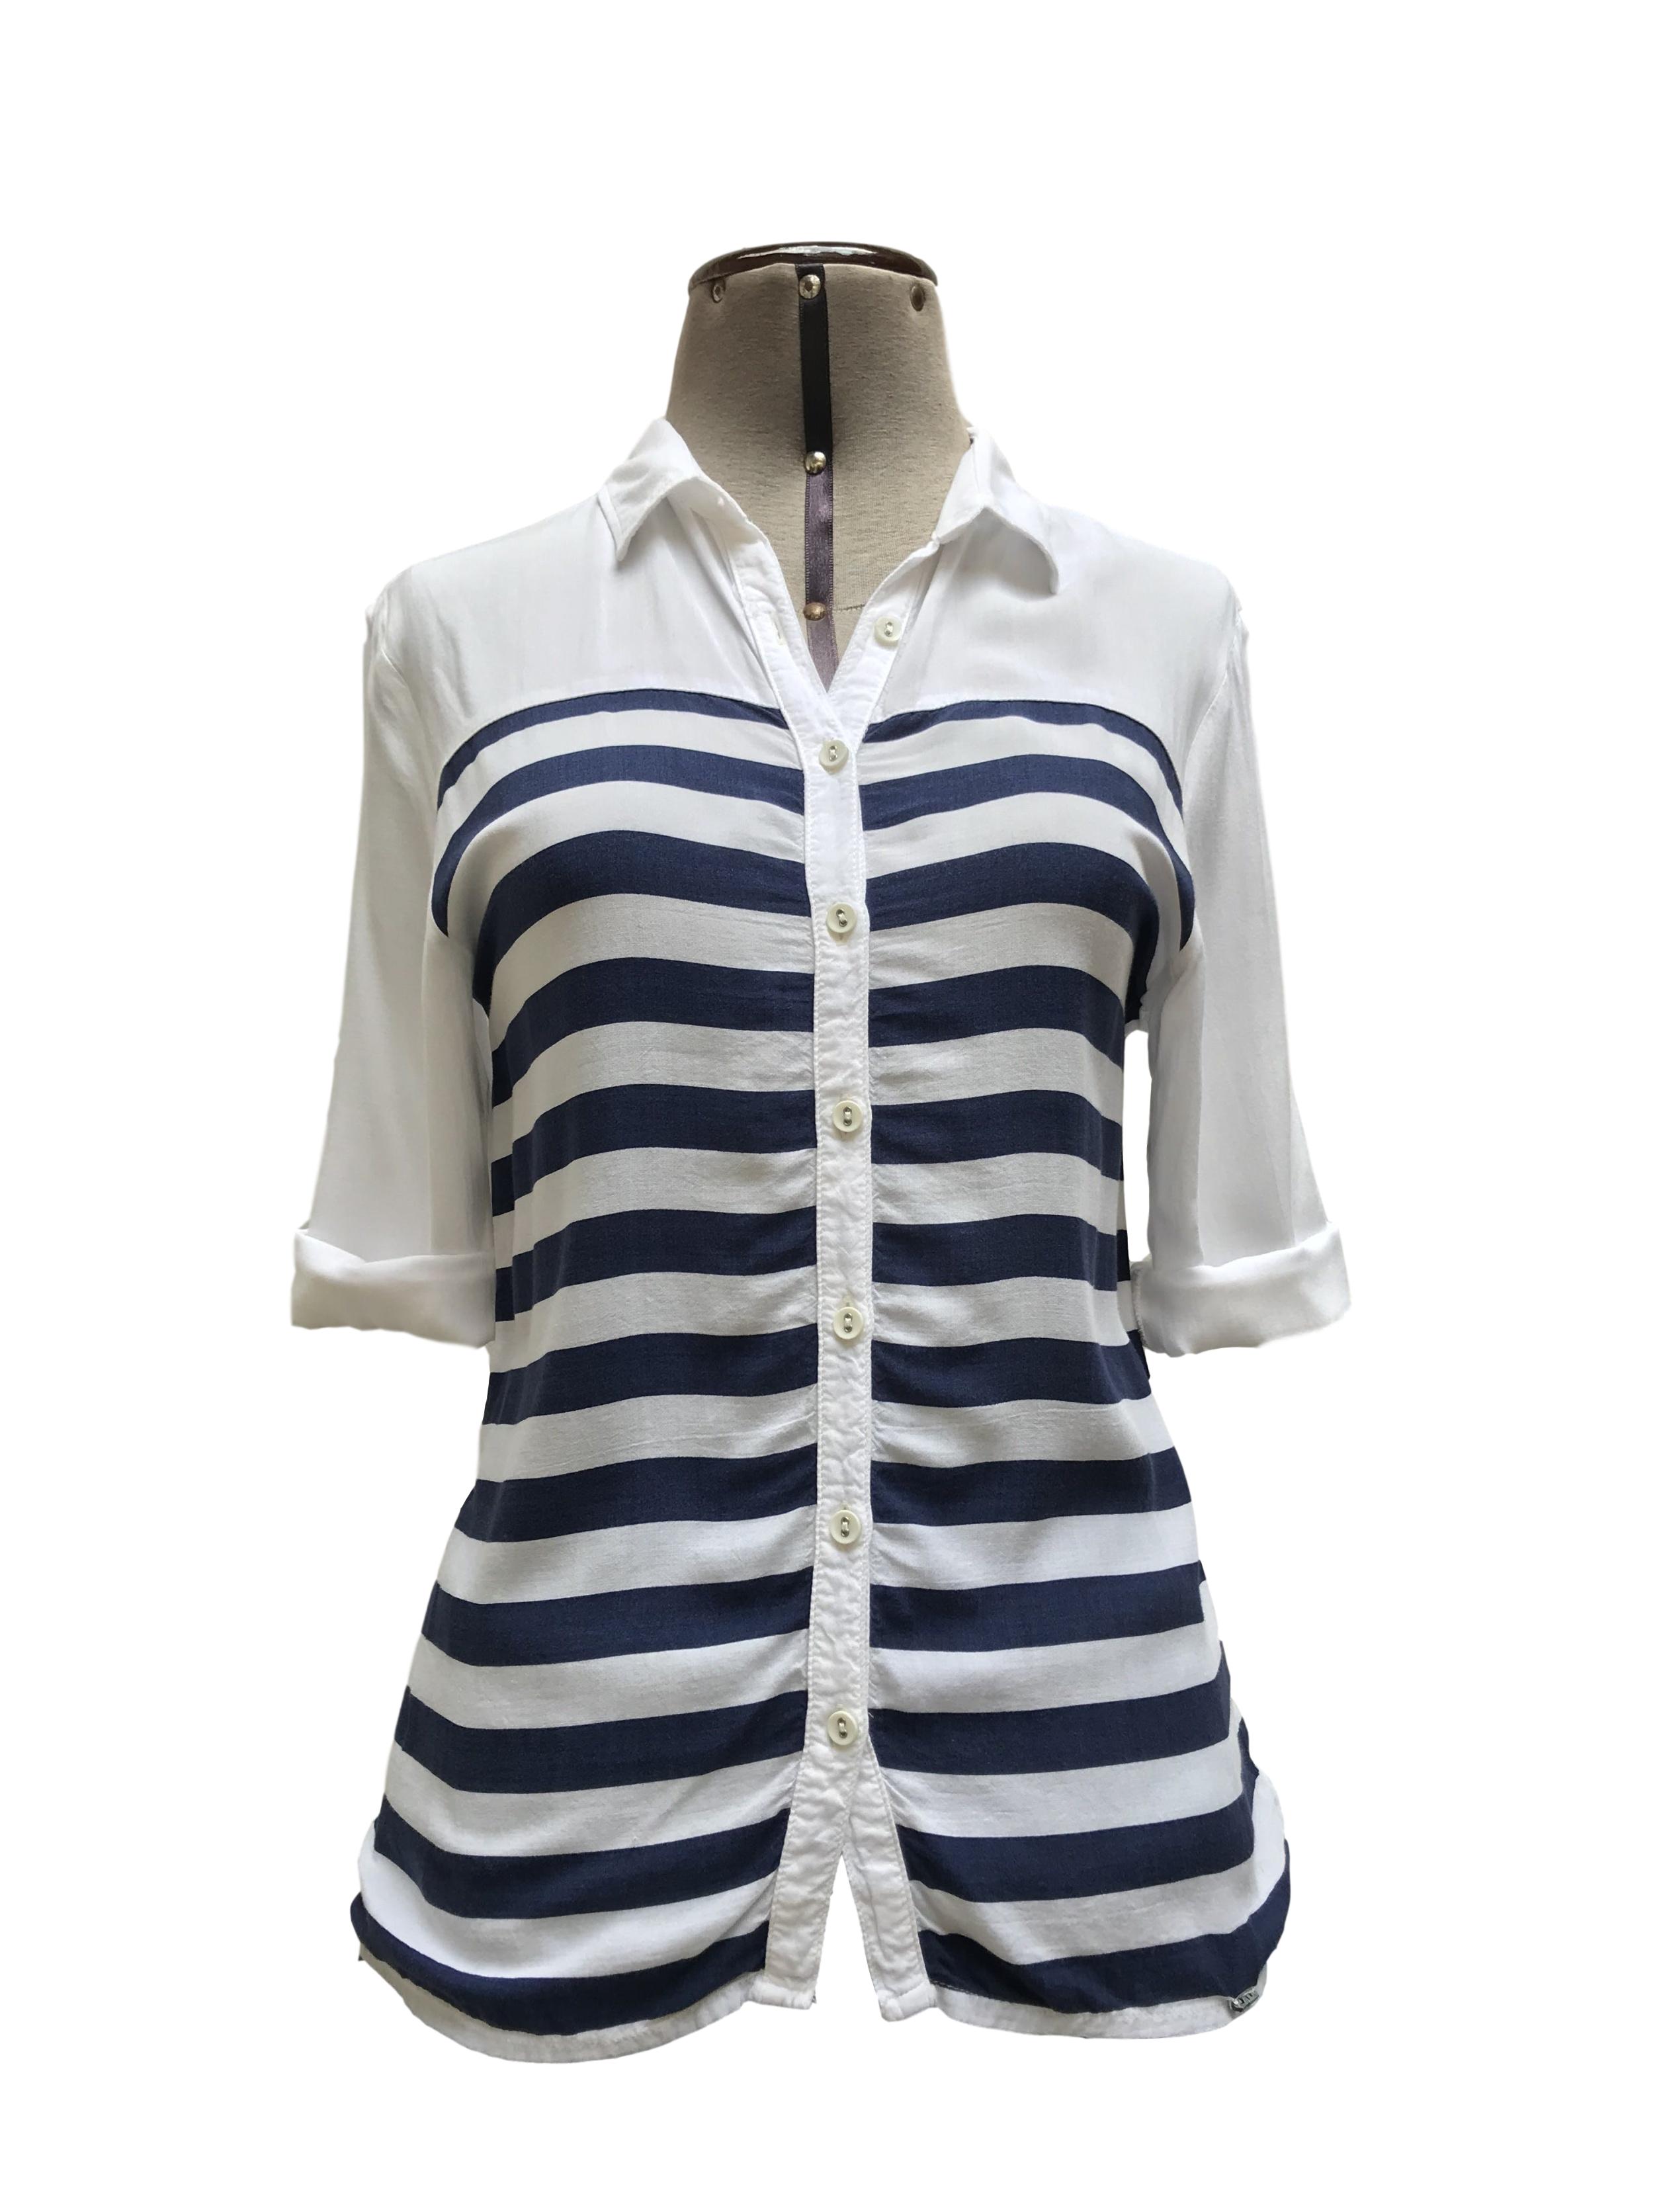 Blusa Exit blanca con estampado de franjas azules horizontales, cuello camisero y fila de botones, manga 3/4 regulable con botón
Talla XS